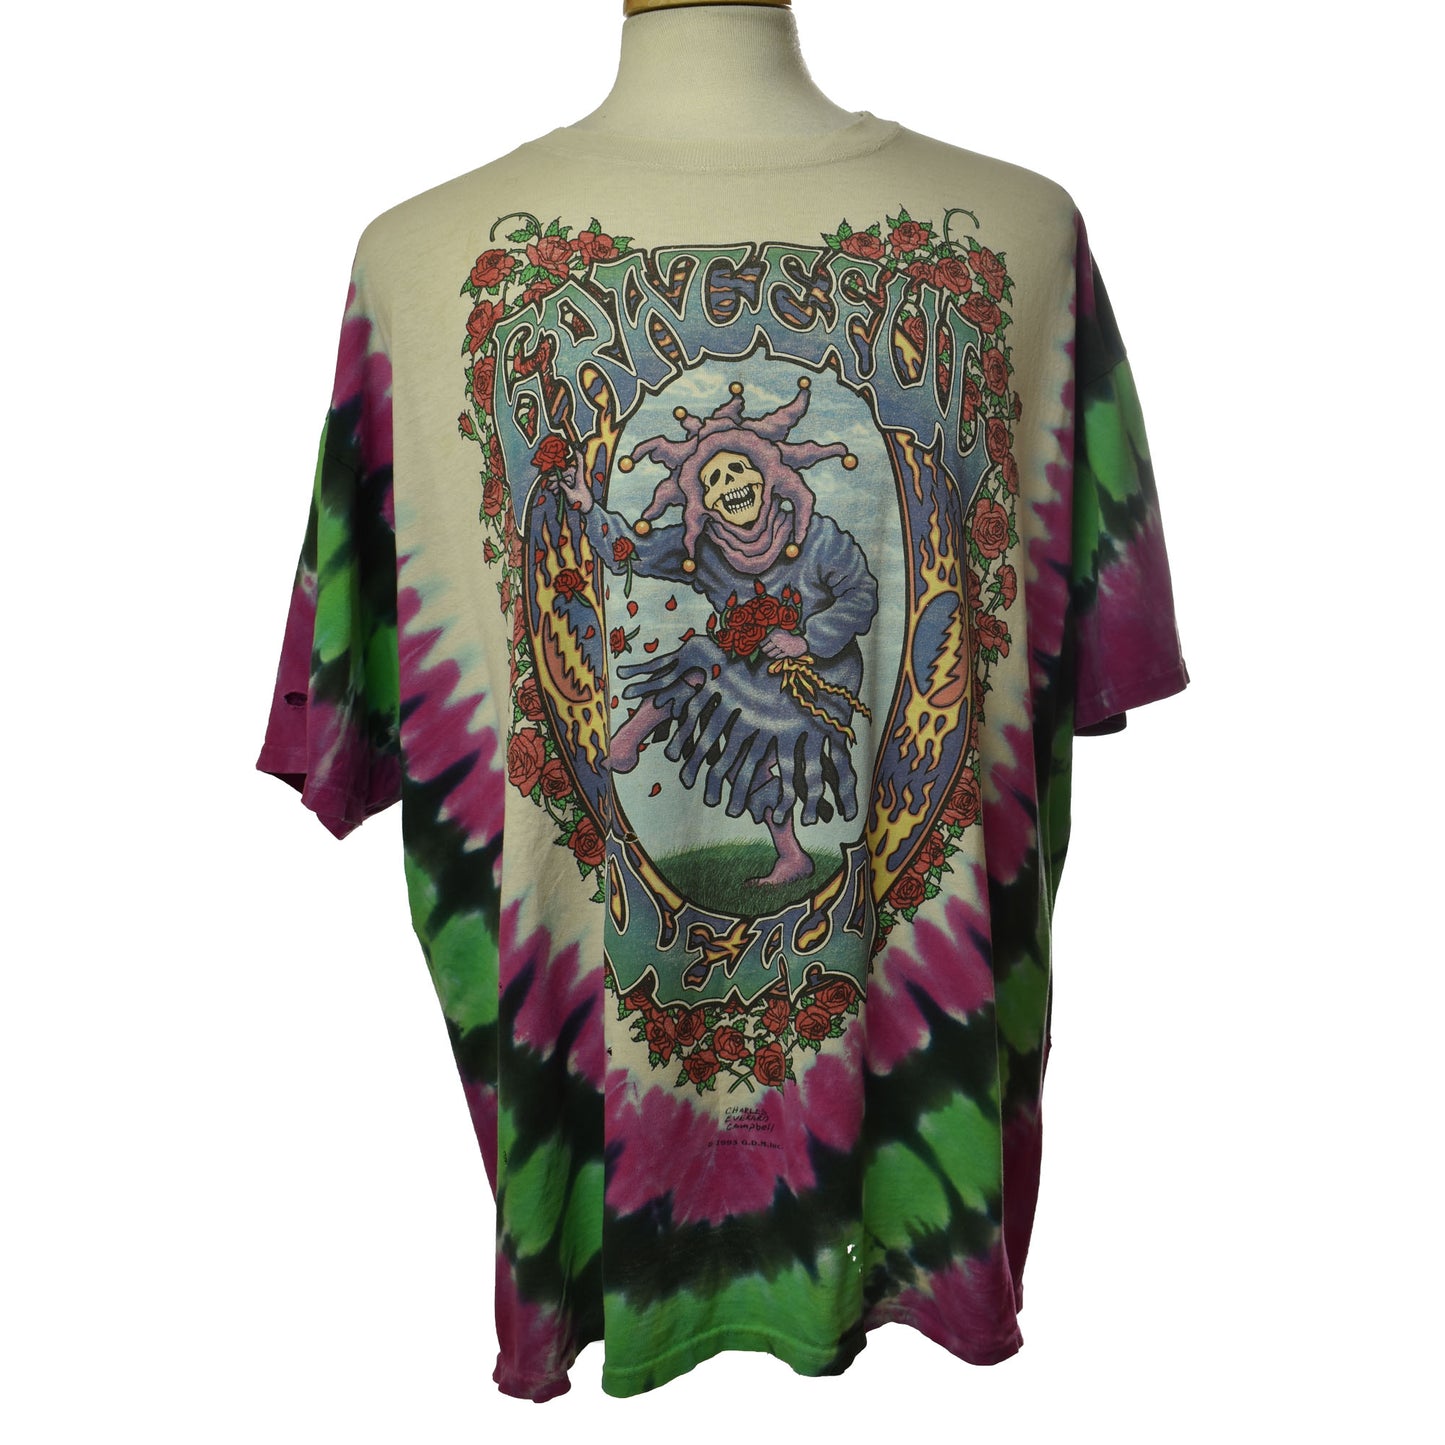 Vintage 1993 Grateful Dead Seasons of The Dead The Endless Tour Size 2X T-shirt